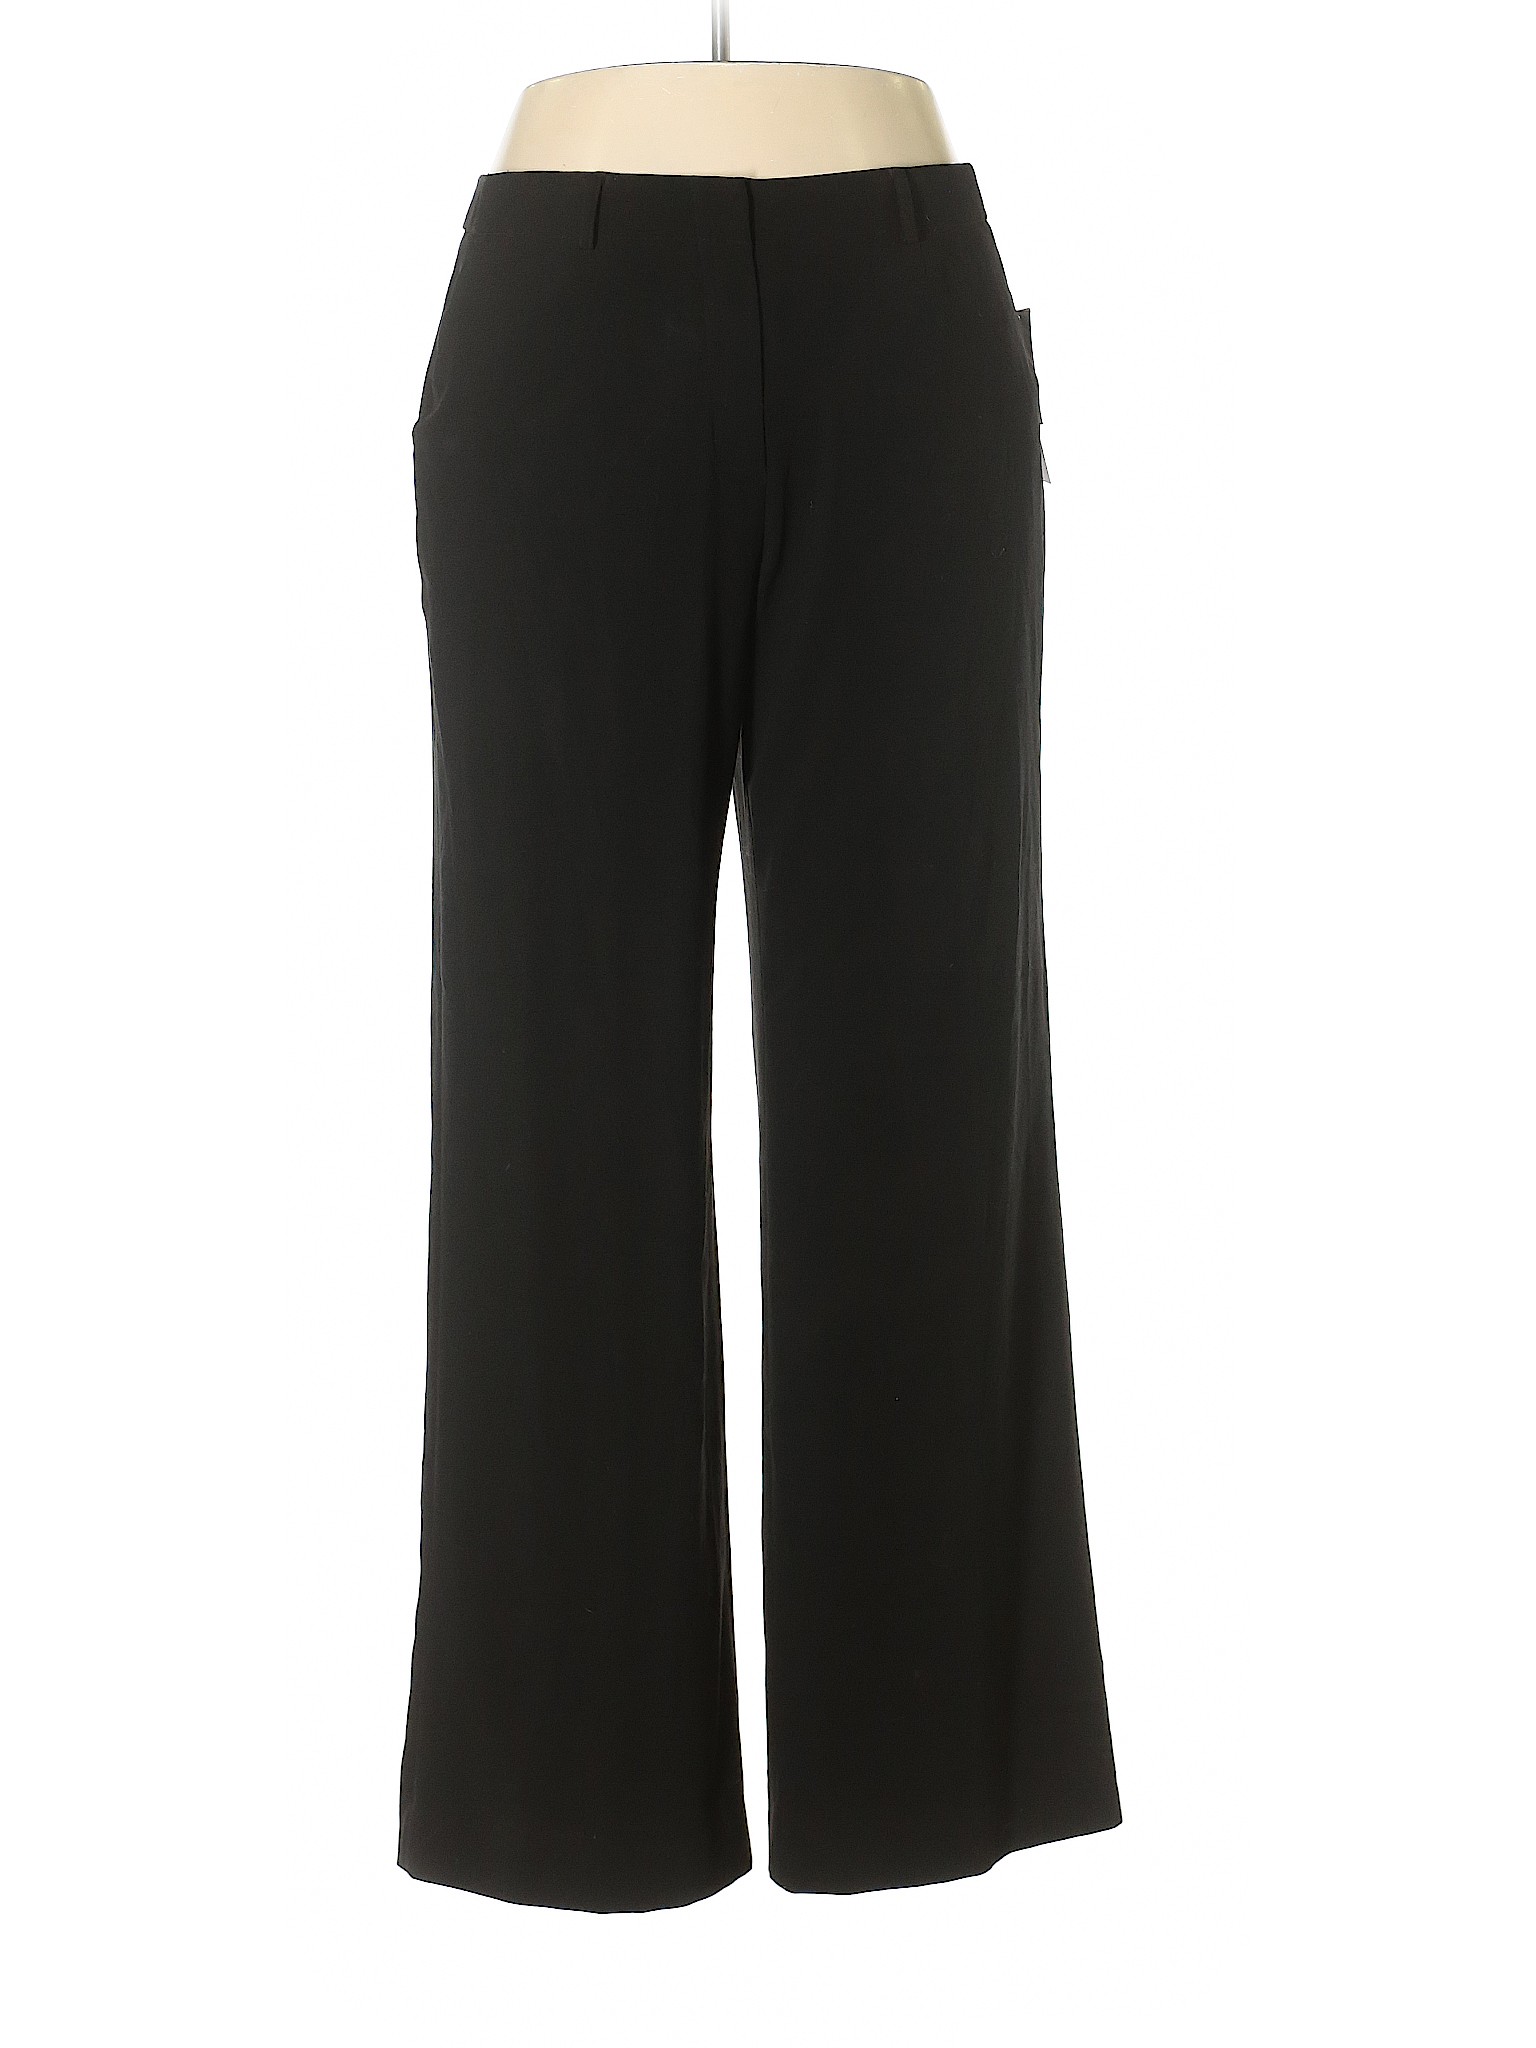 Coldwater Creek Women Black Dress Pants 14 | eBay